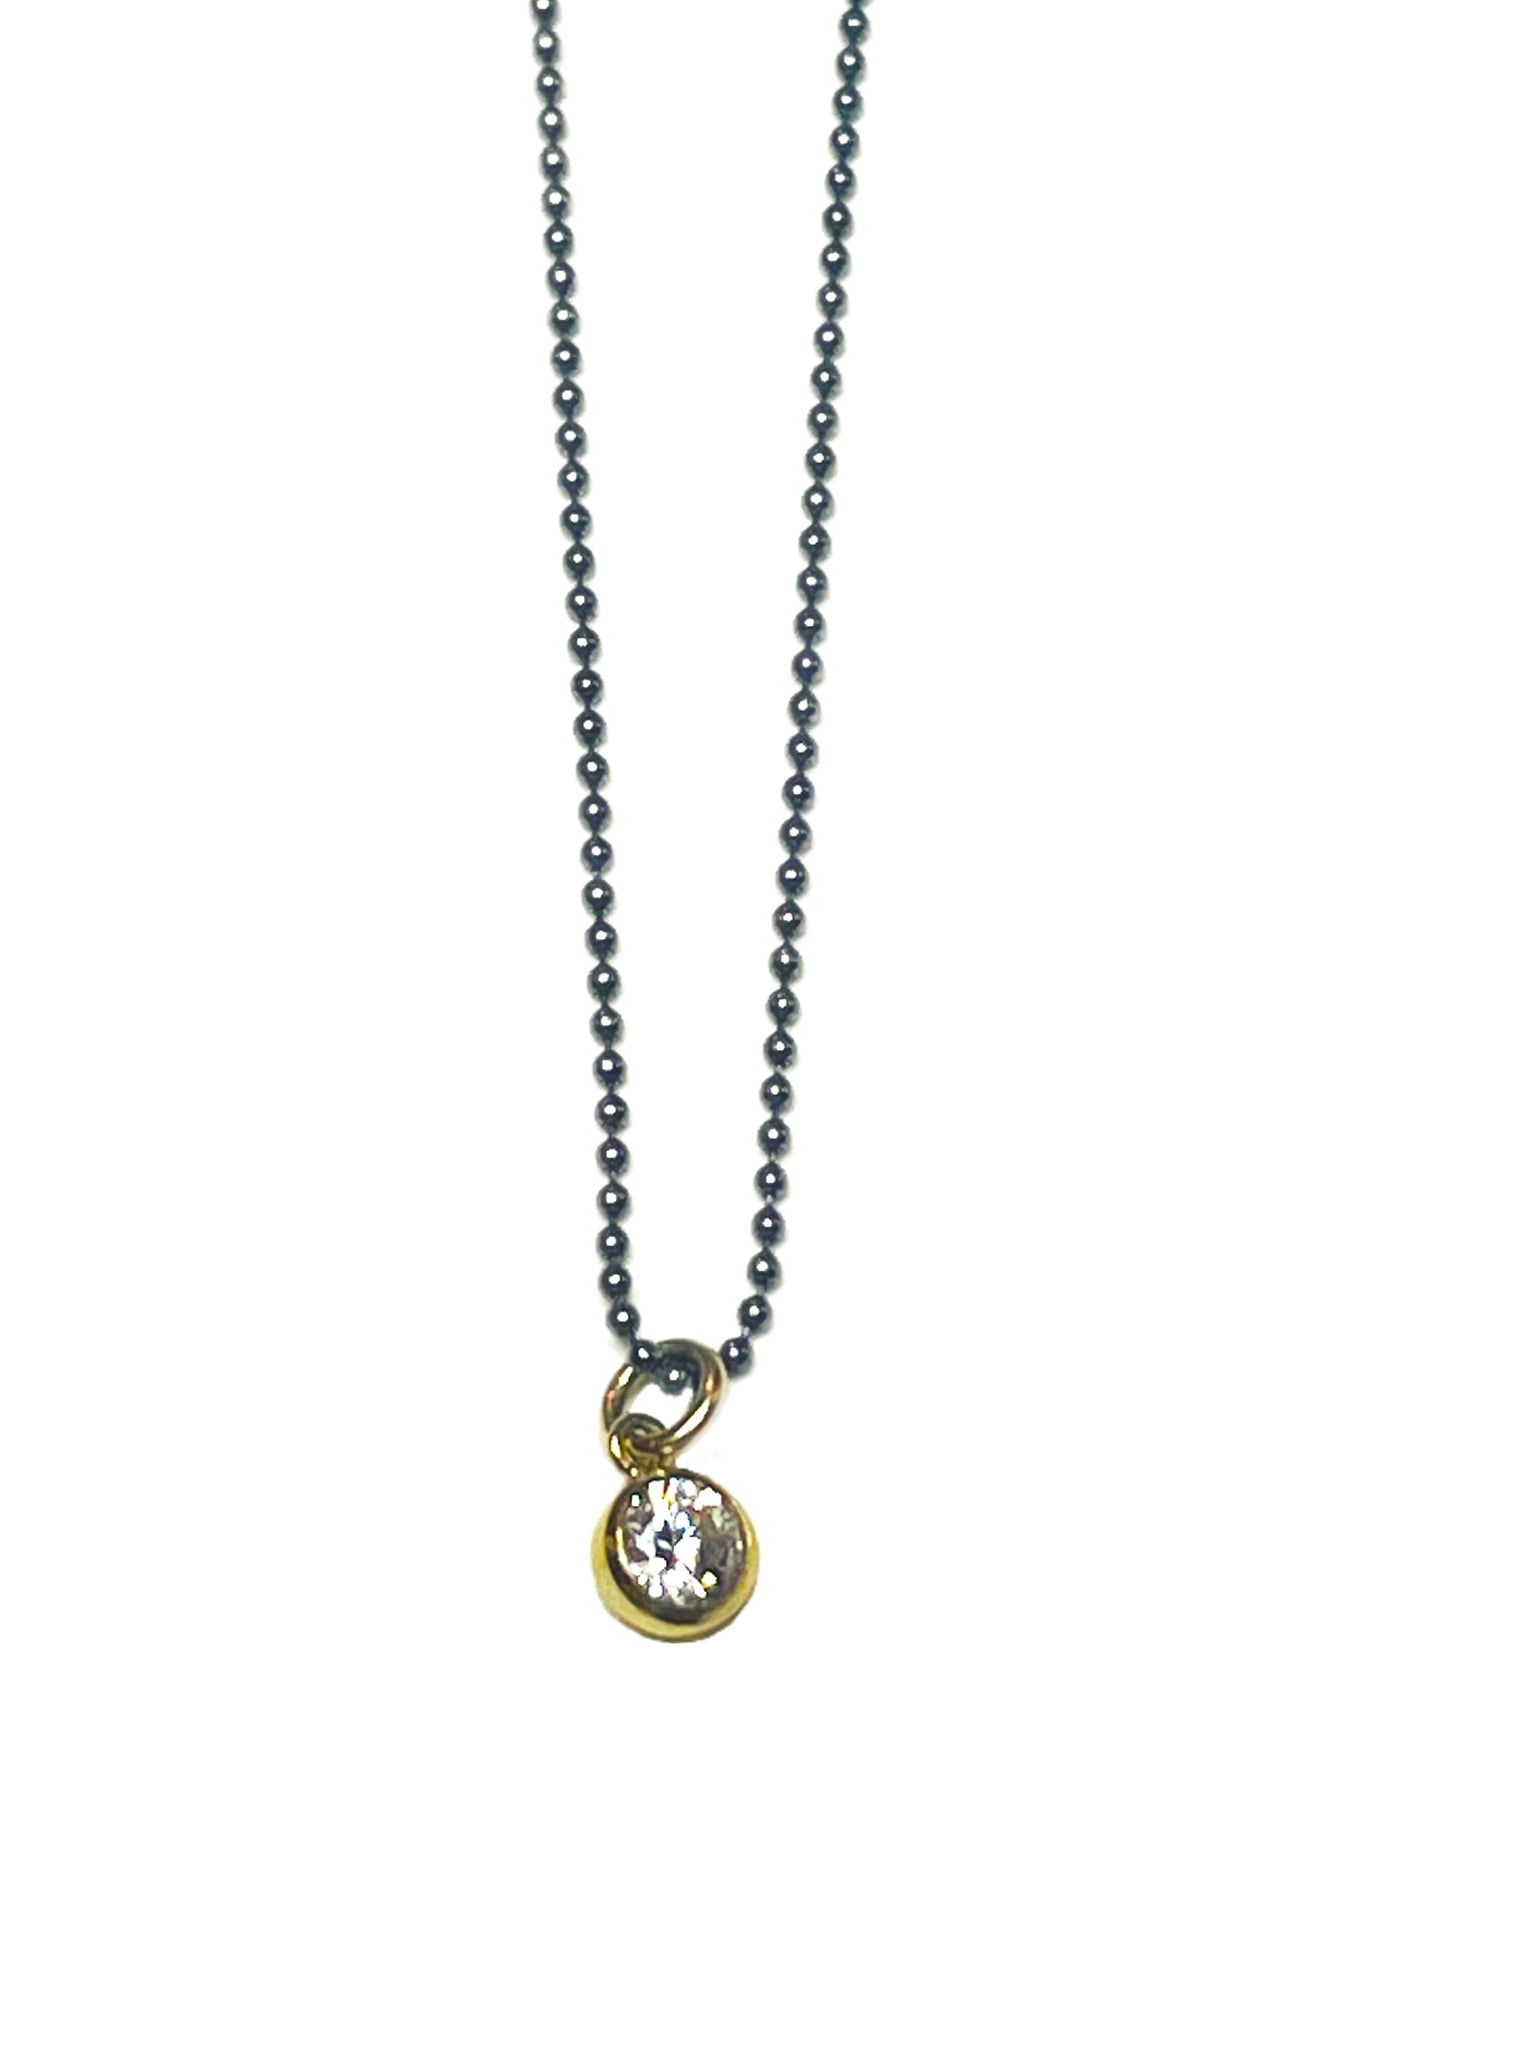 Venus - sterling silver necklace with bezel set vermeil CZ